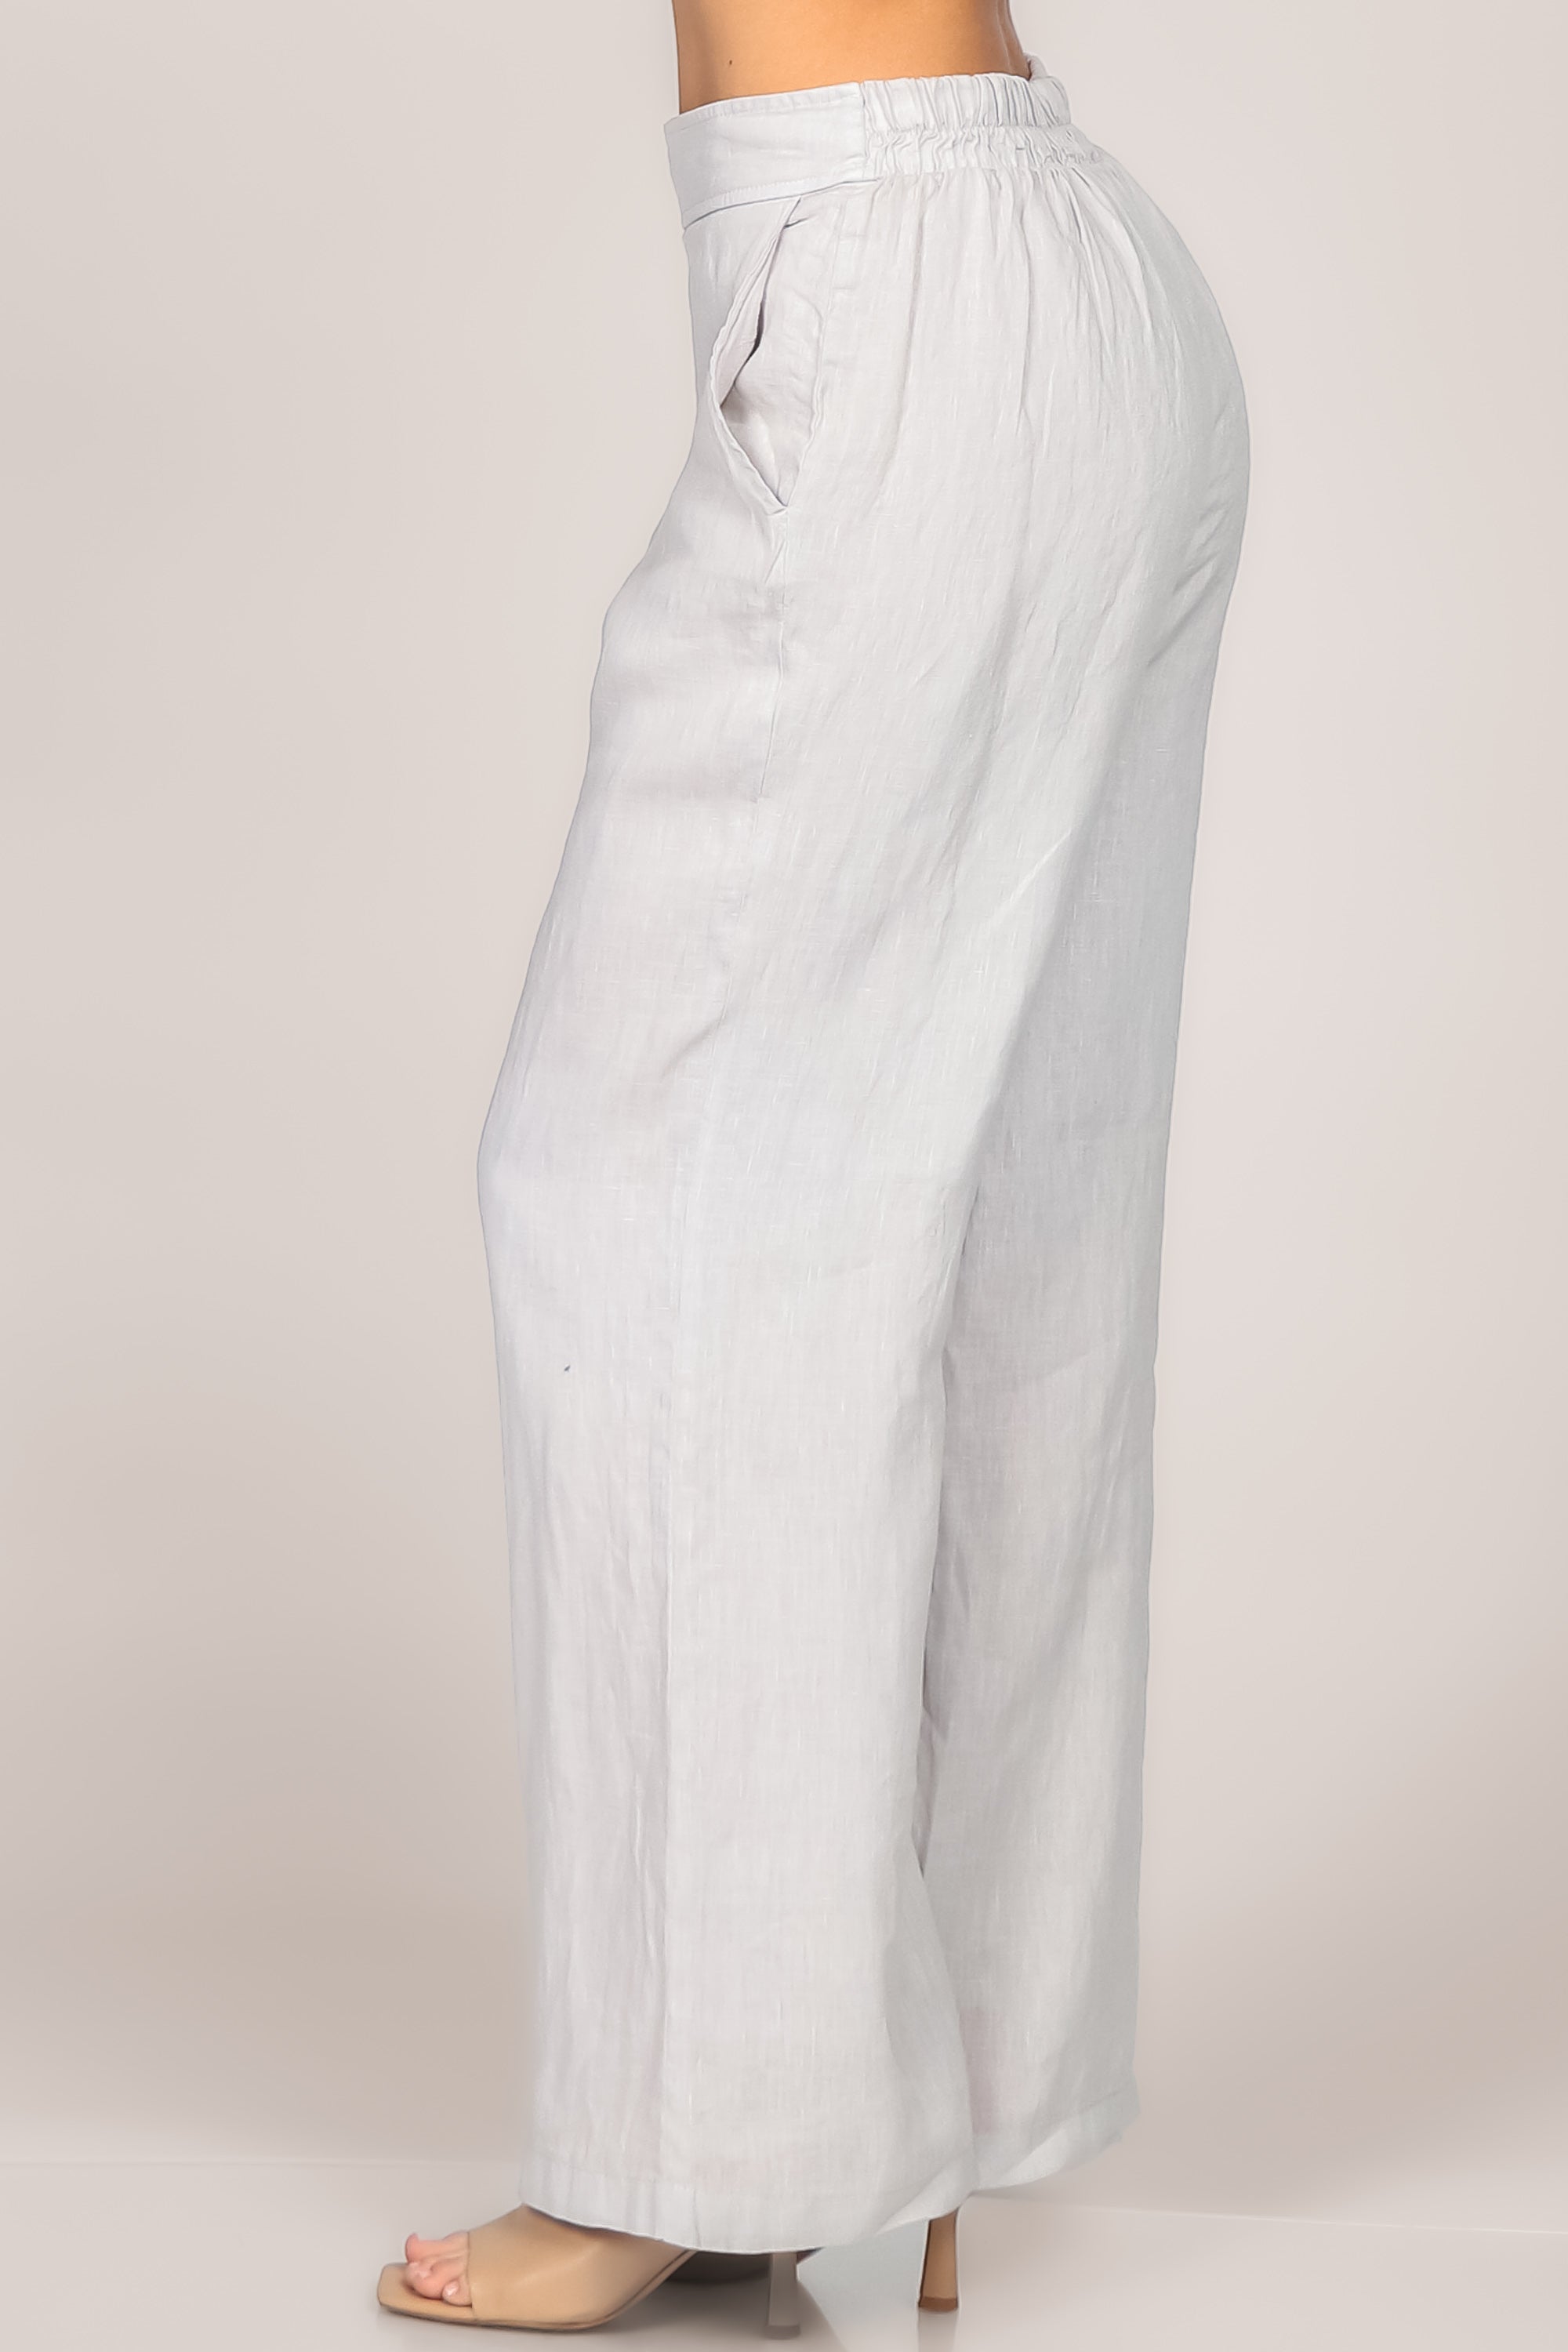 注目の ※値下げ※【新品】rayon/linen wide straight pant - パンツ